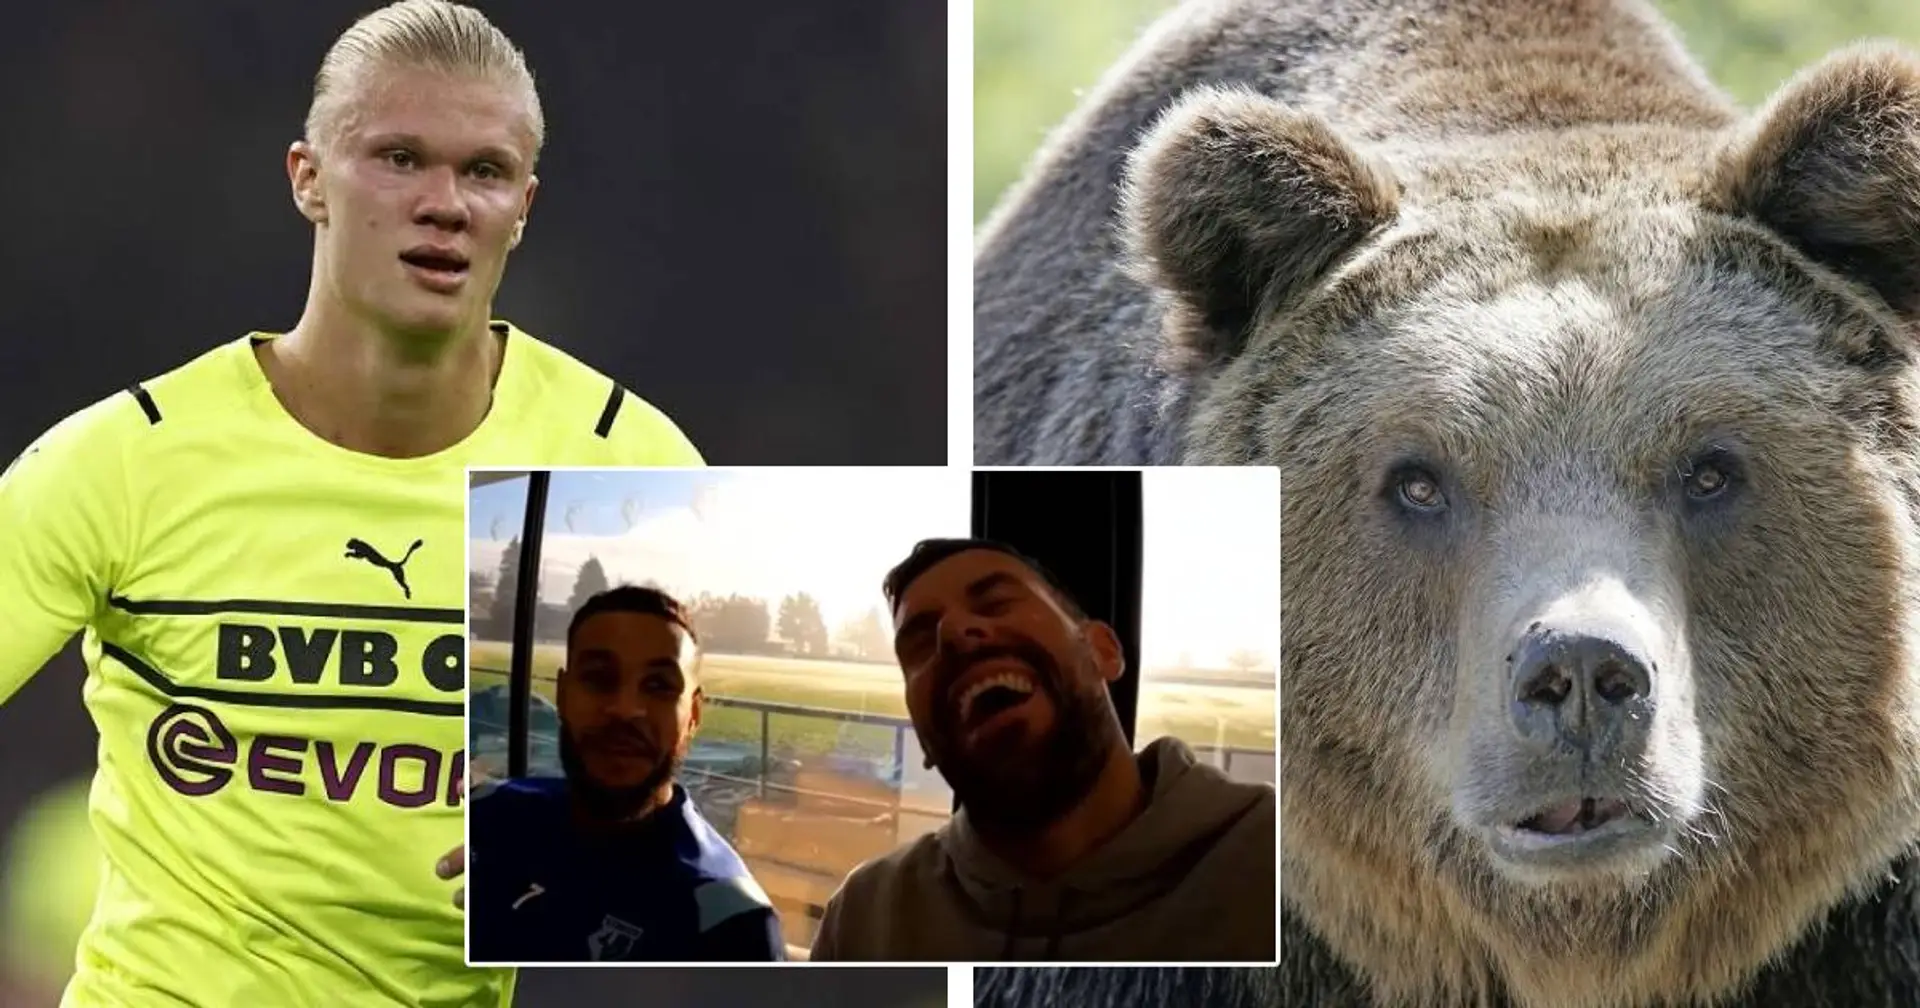 Teamkollege über Erling Haaland: "Er isst einfach wie ein Bär"